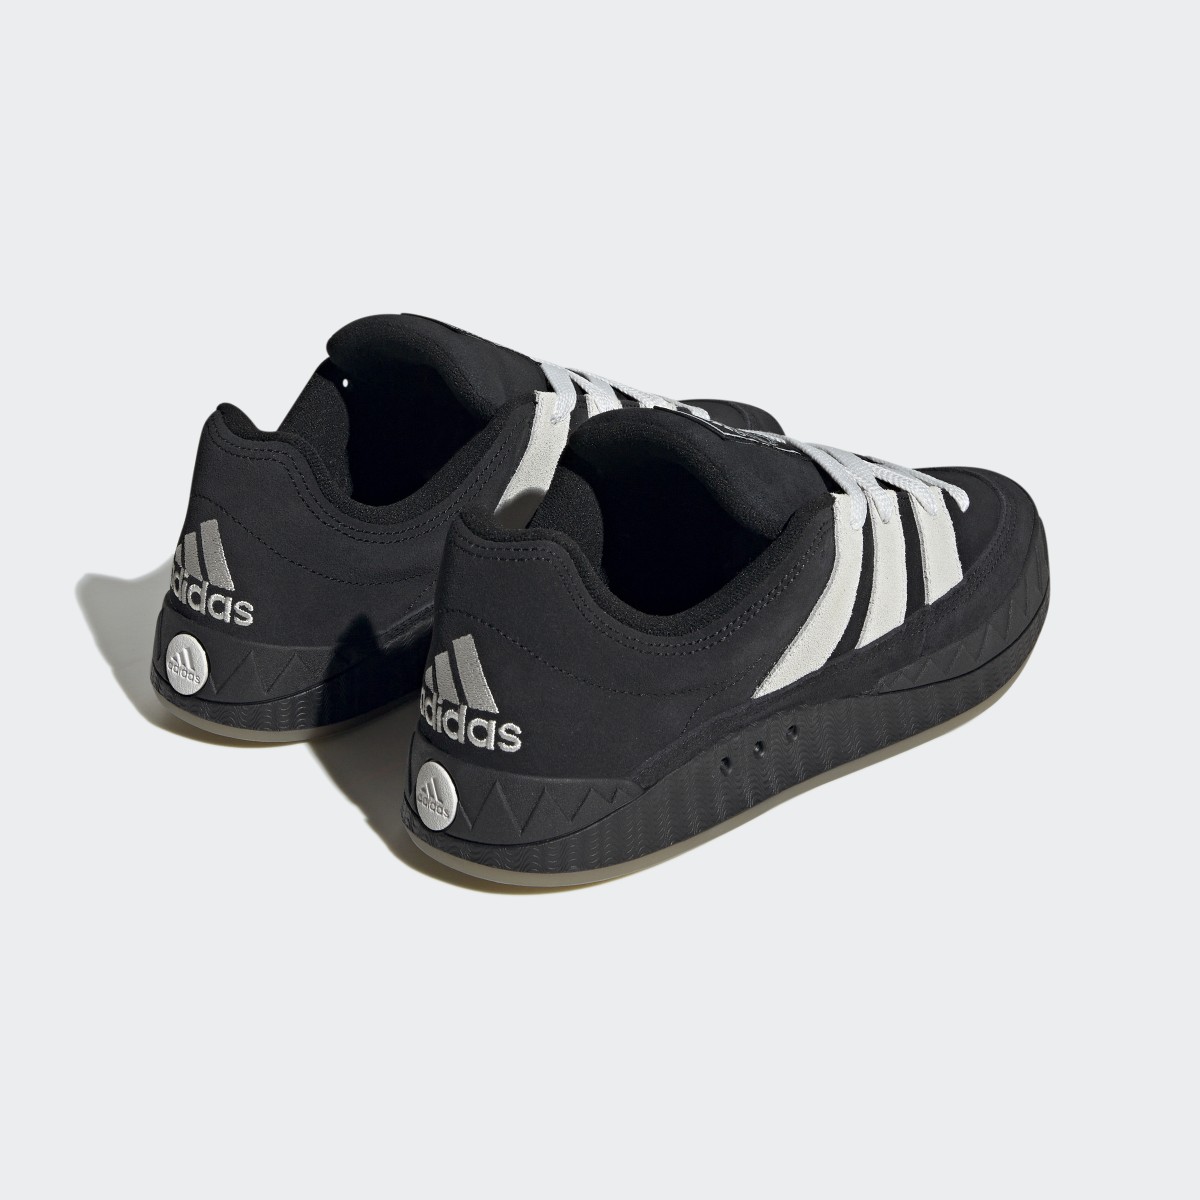 Adidas Adimatic Shoes. 6